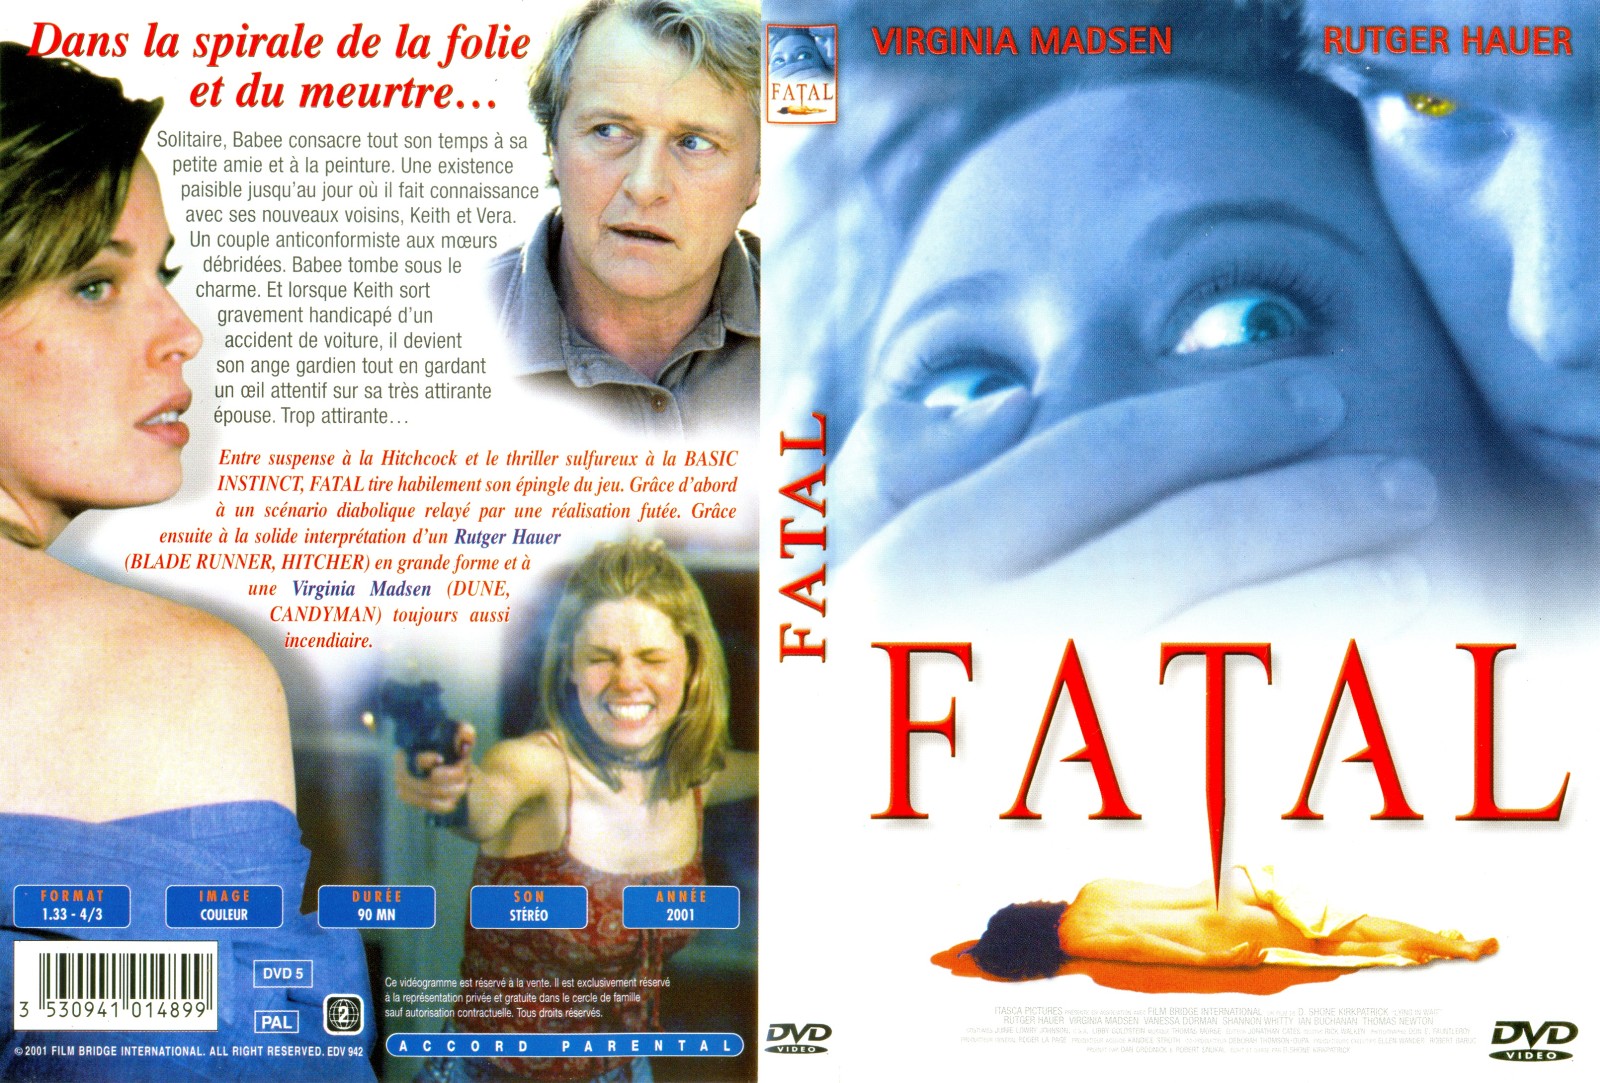 Jaquette DVD Fatal v2